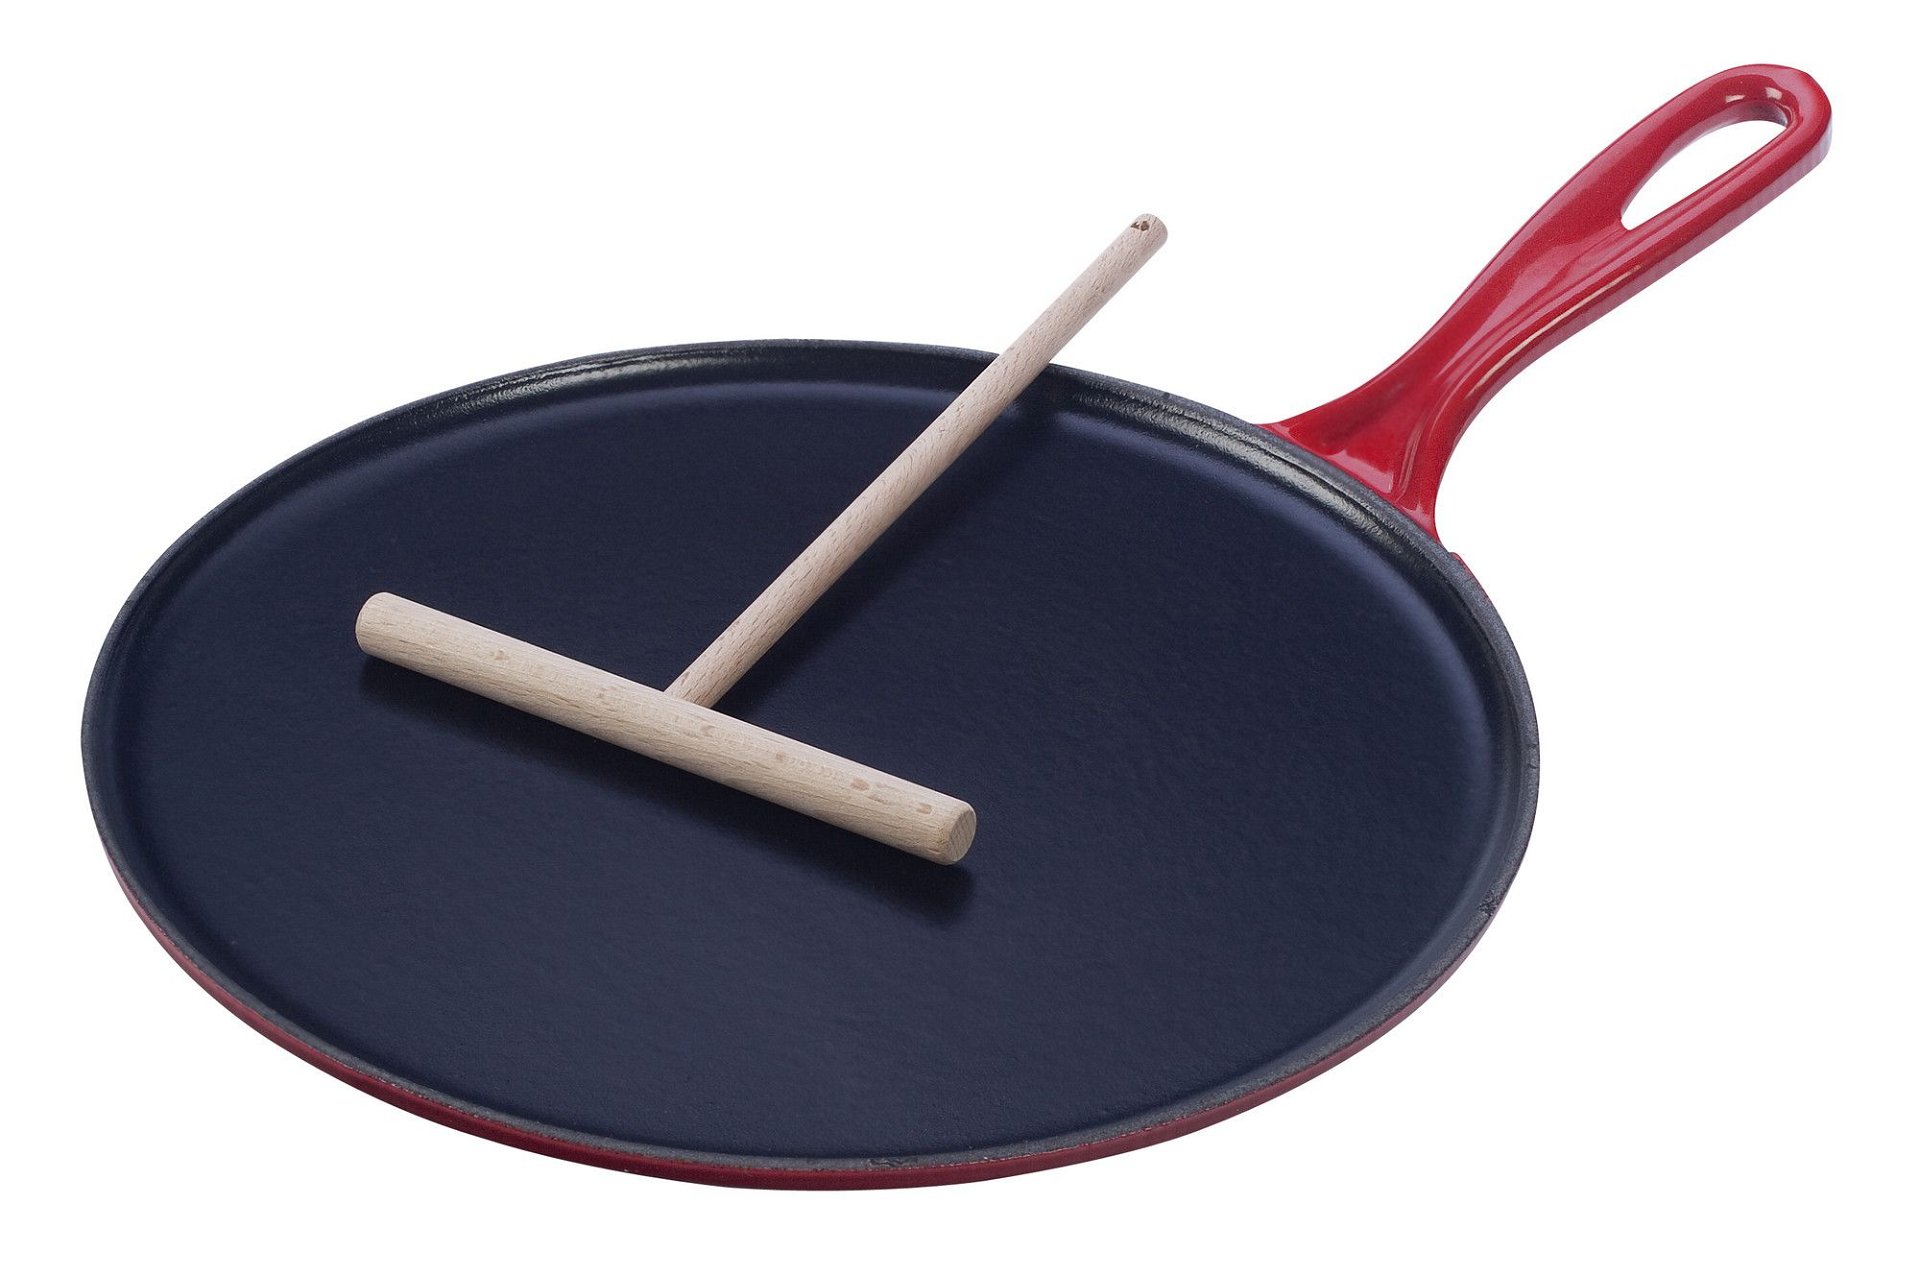 Weglaten Zichzelf gemakkelijk Le Creuset 10.75" Crepe Pan with Wooden Crepe Spreader | Cerise/Cherry Red